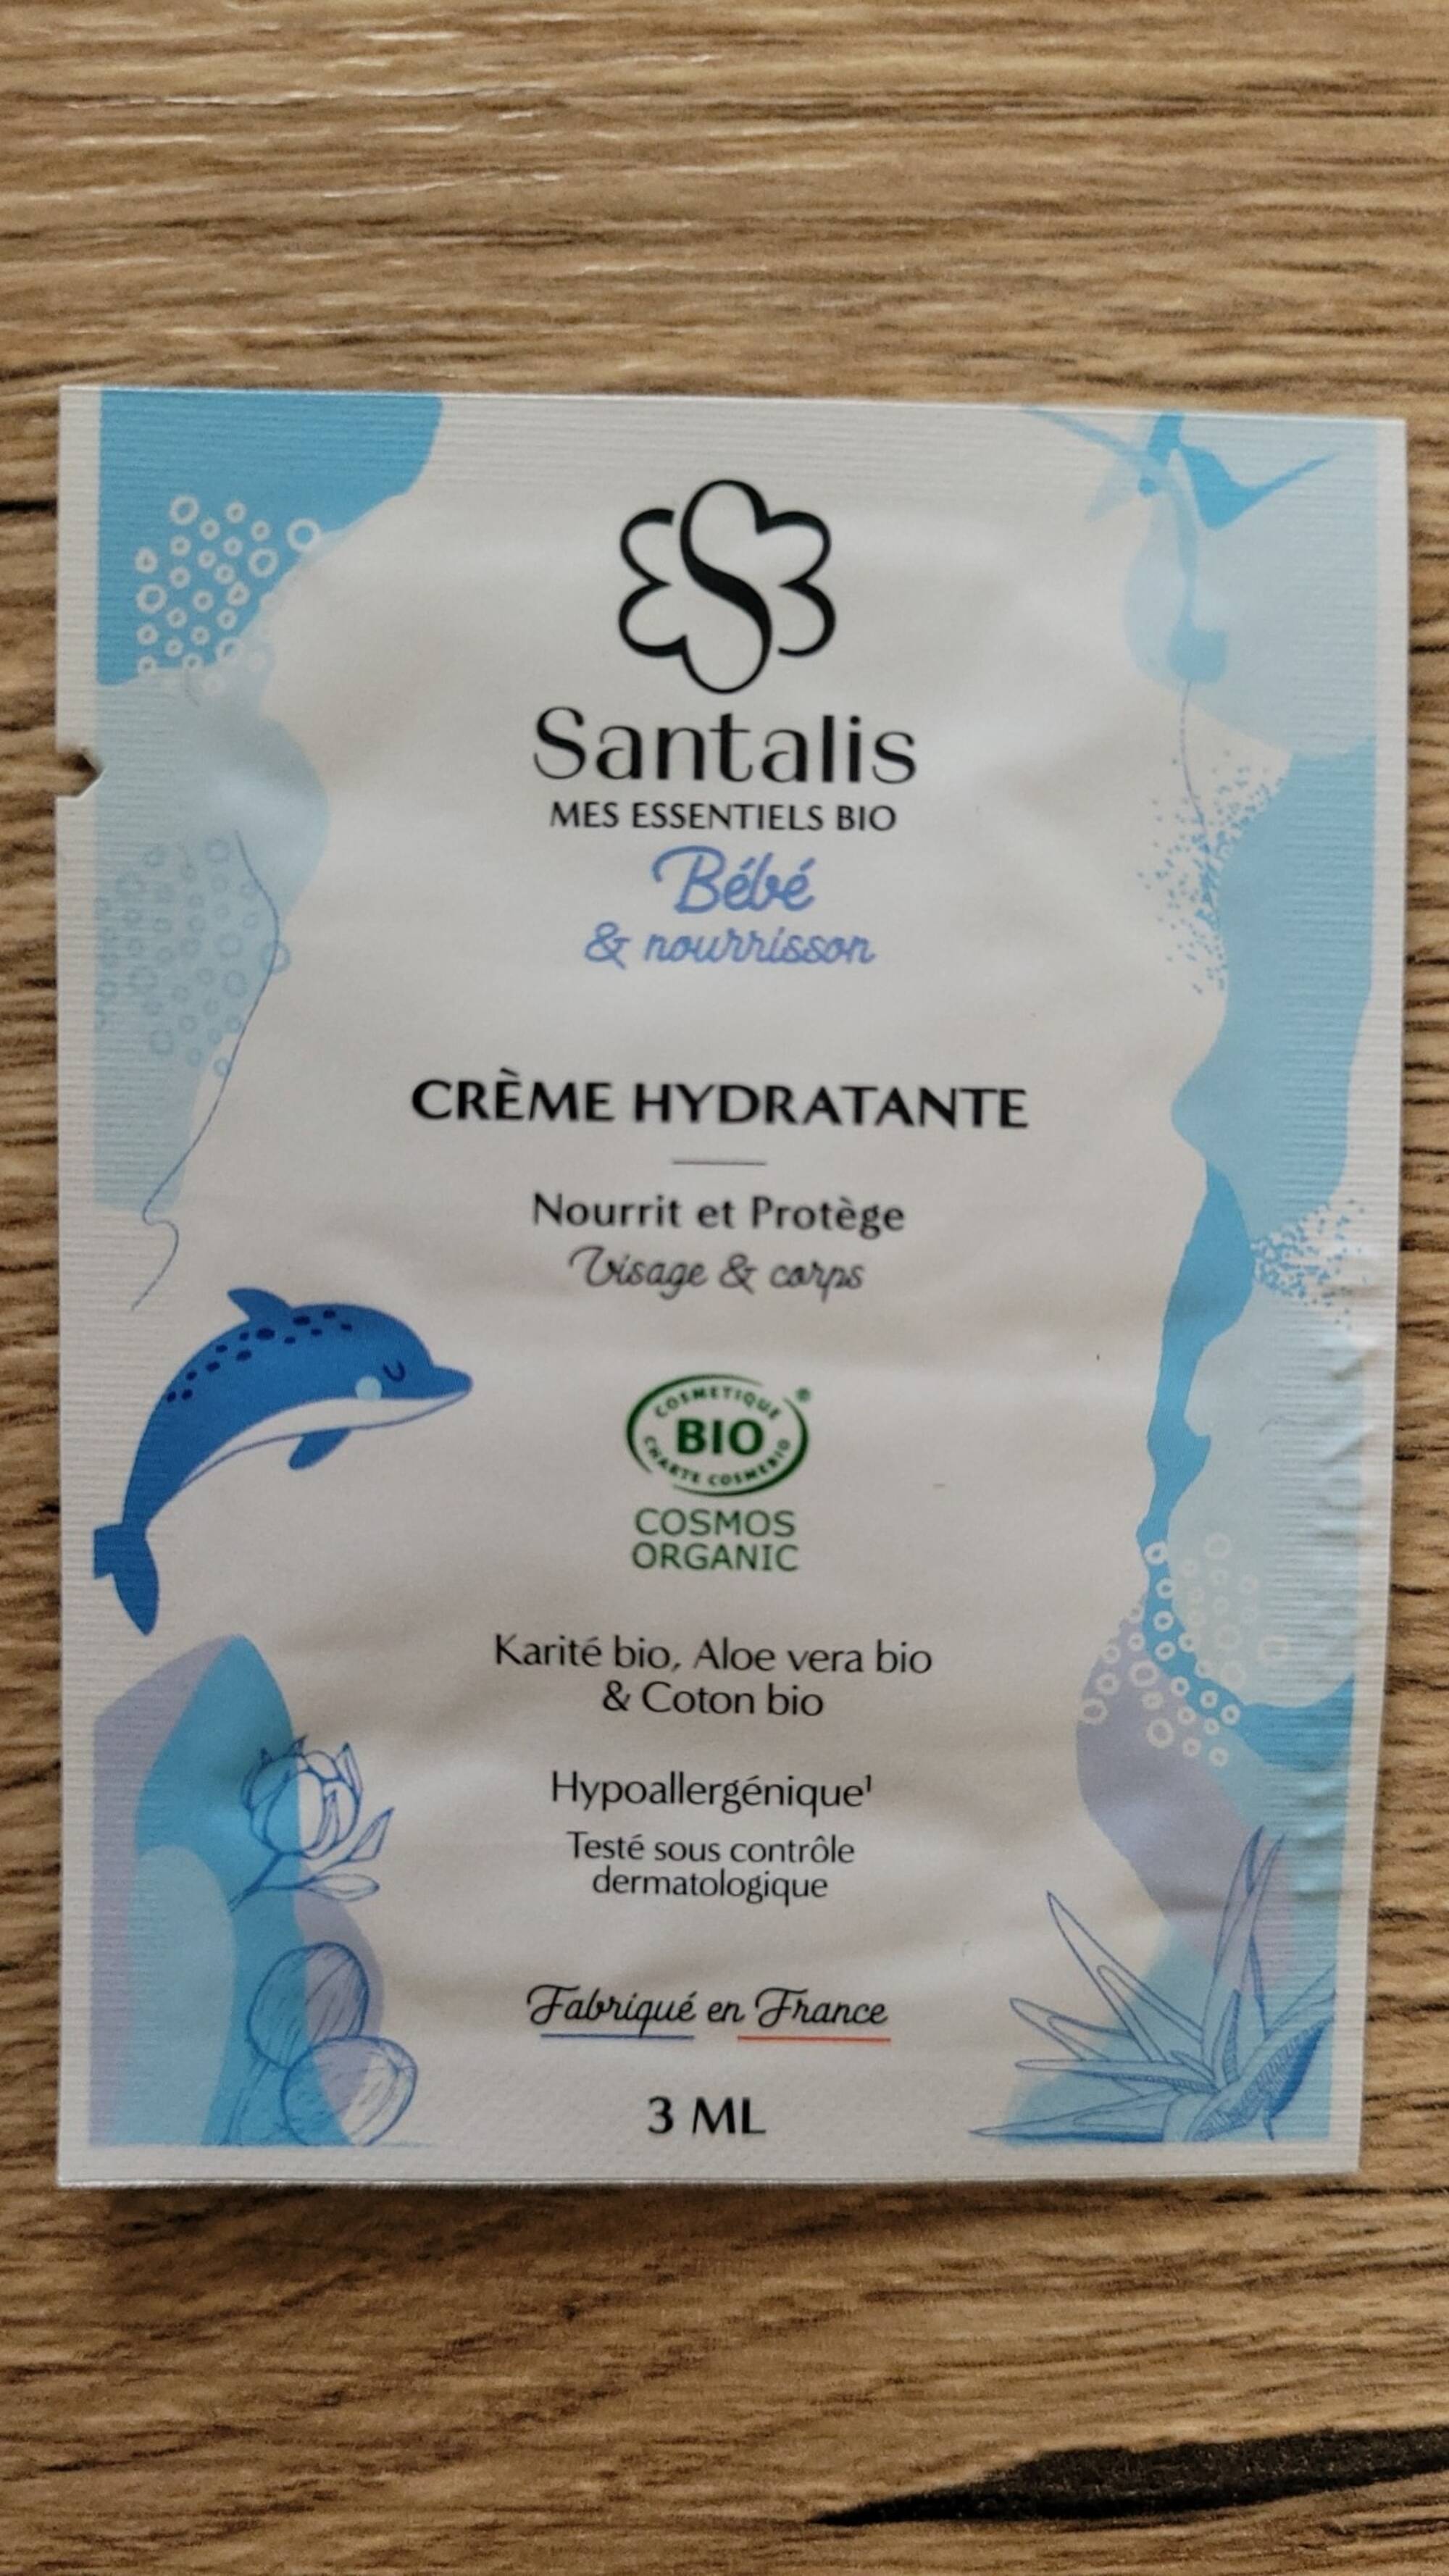 SANTALIS - Mes essentiels bio Bébé & Nourrisson - Crème hydratante